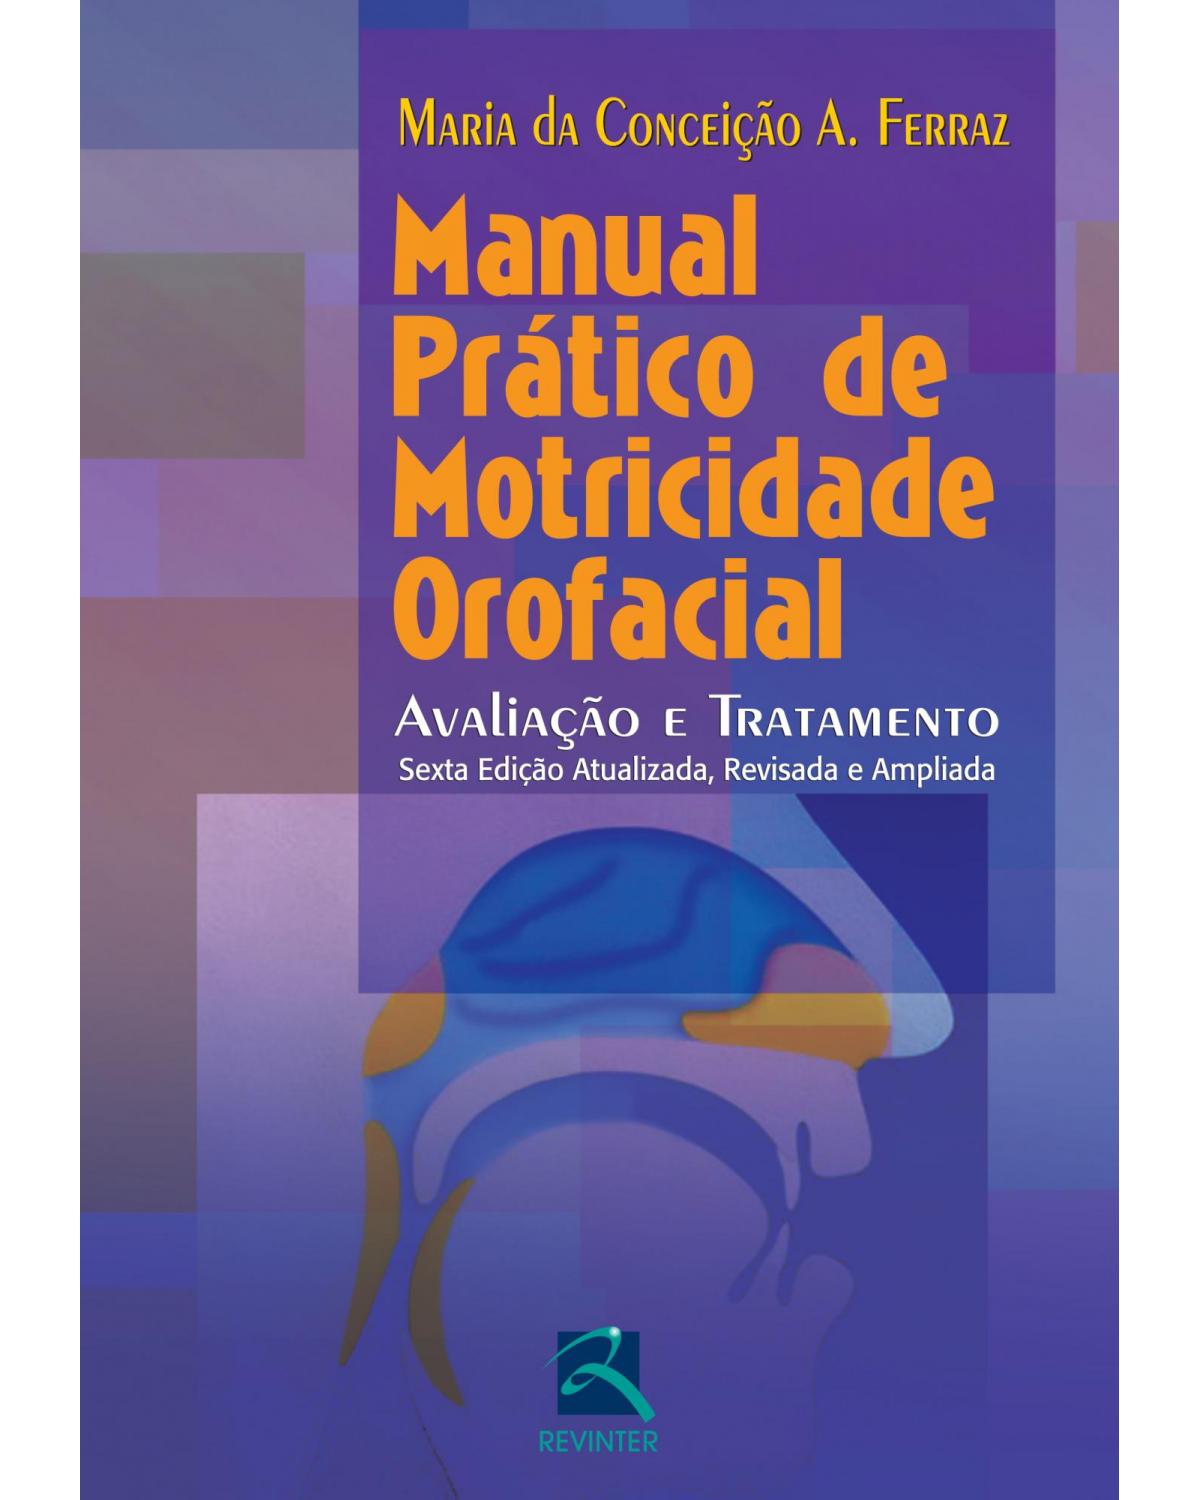 Manual prático de motricidade orofacial - avaliação e tratamento - 6ª Edição | 2012